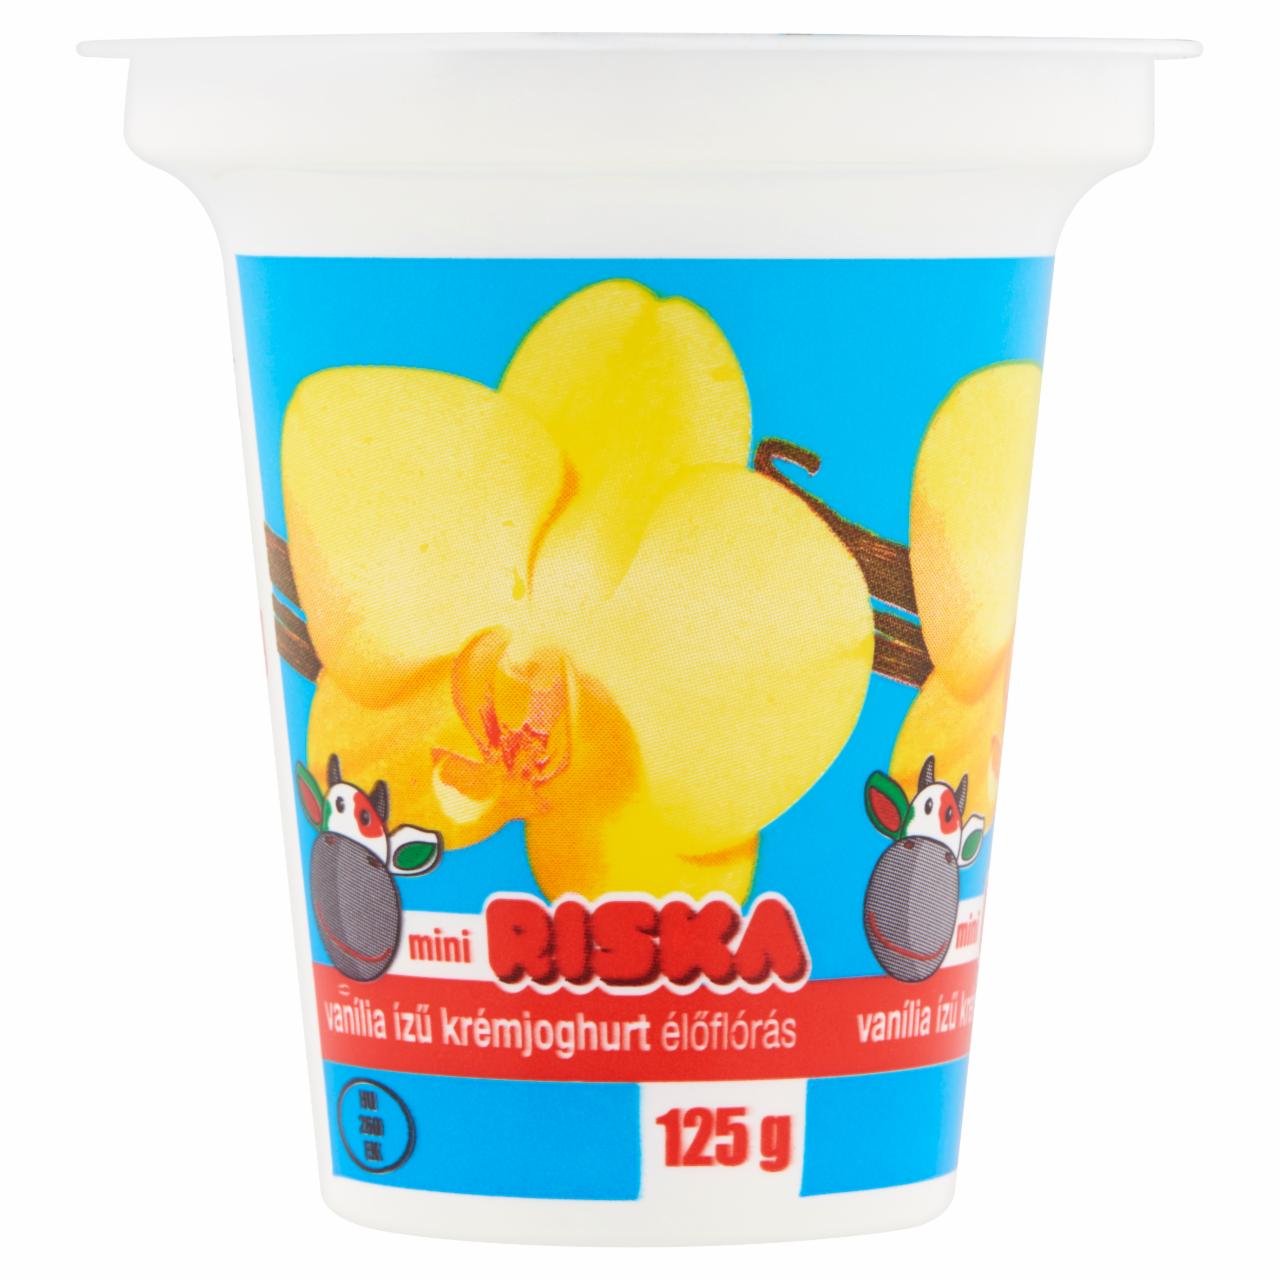 Képek - Riska vanília ízű krémjoghurt 125 g